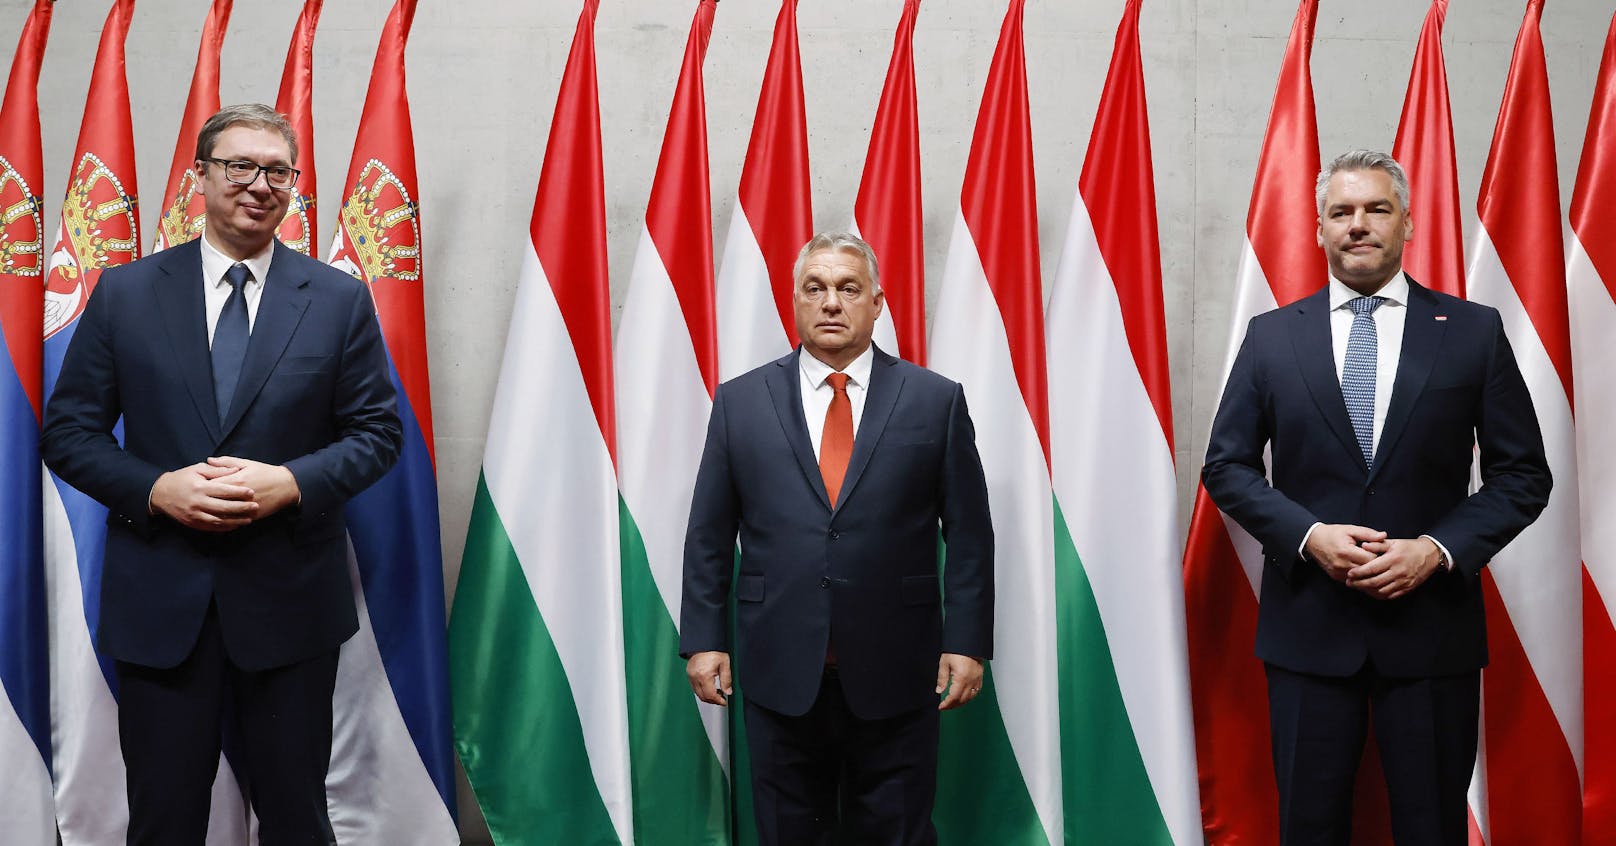 Der serbische Präsident Aleksandar Vucic, der ungarische Premimerminister Viktor Orban und der österreichische Bundeskanzler Karl Nehammer.